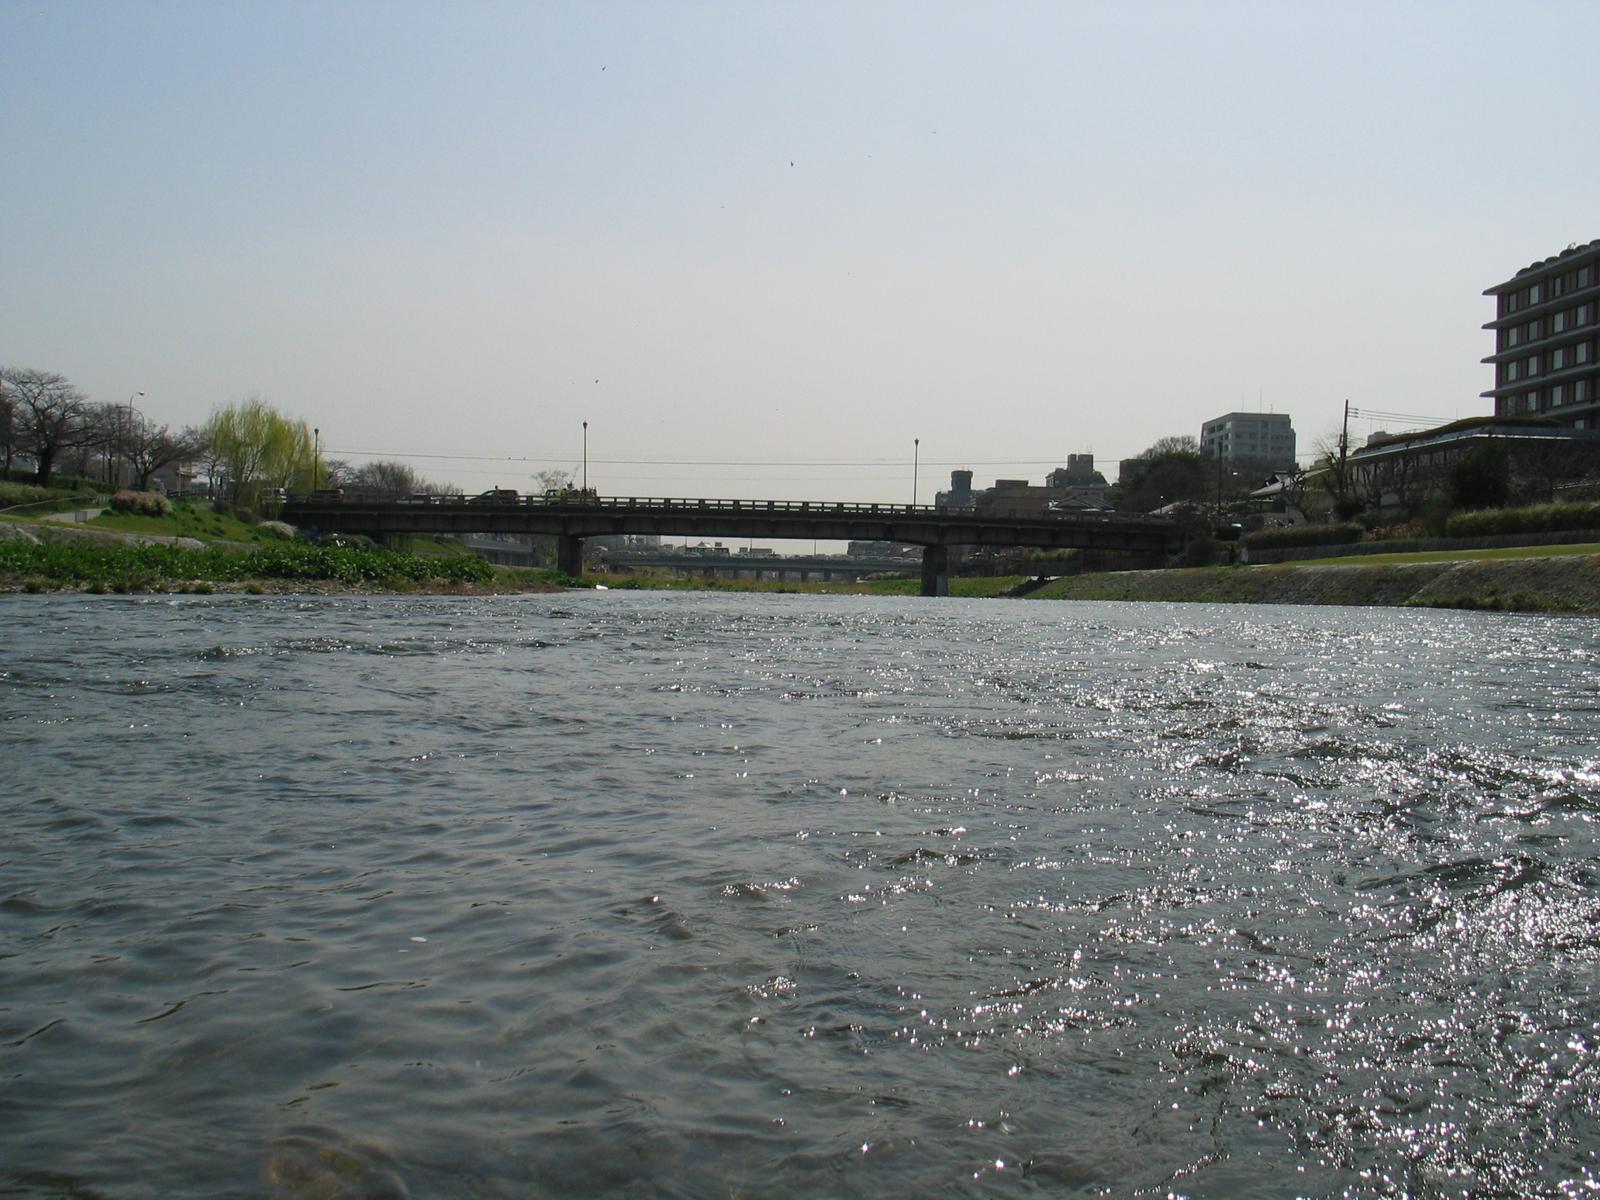 The Kamo River